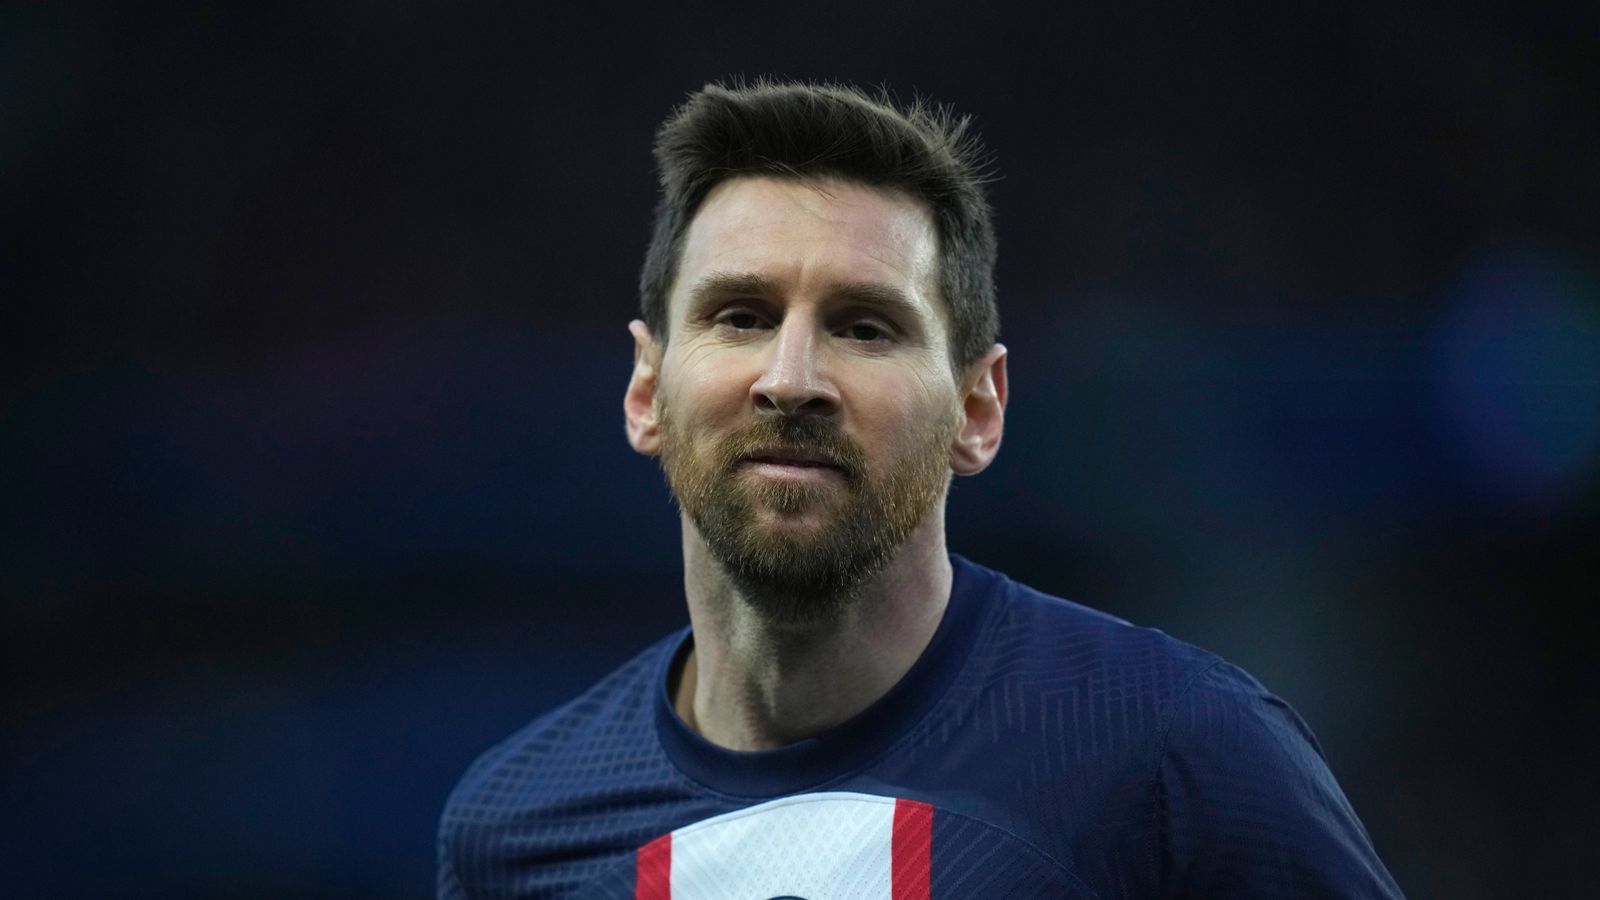 Lionel Messi quitte le Paris Saint-Germain à la fin de la saison, l’équipe française n’ayant pas l’intention de proposer un nouveau contrat |  Nouvelles du centre de transport